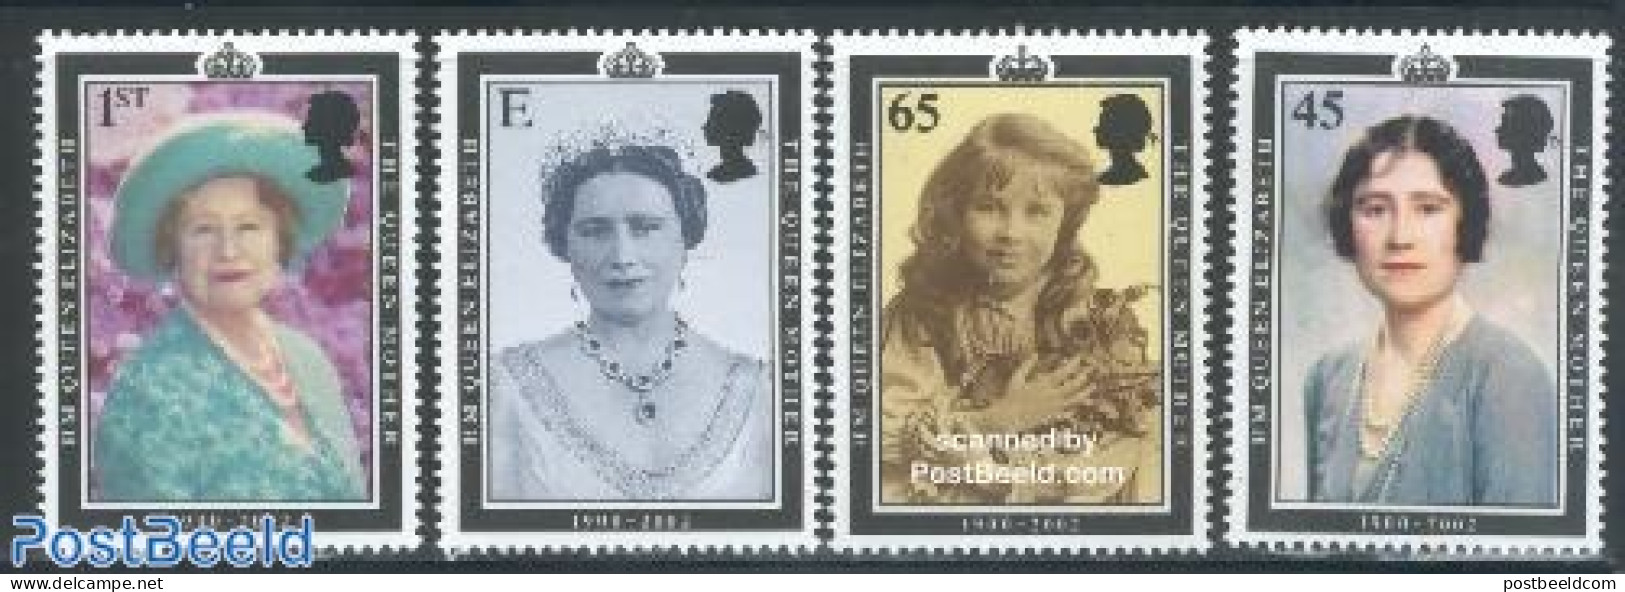 Great Britain 2002 Queen Mother 4v, Mint NH, History - Kings & Queens (Royalty) - Ongebruikt